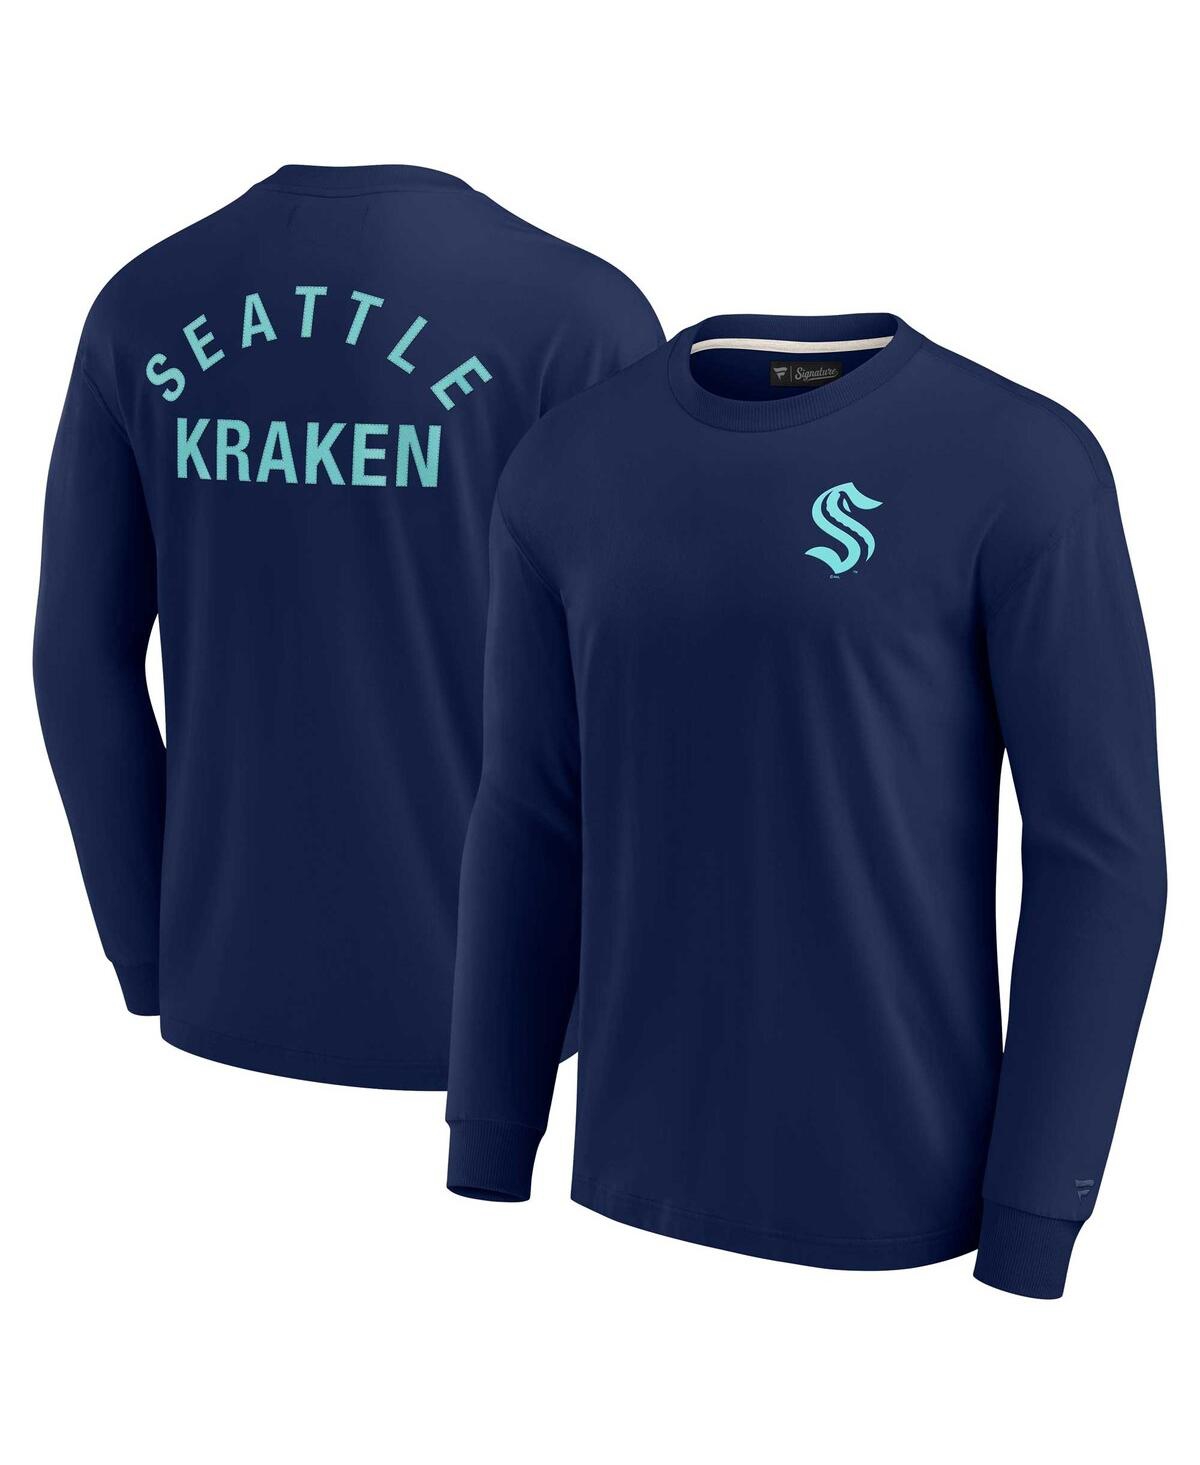 Men's and Women's Fanatics Signature Deep Sea Blue Seattle Kraken Super Soft Long Sleeve T-shirt - Deep Sea Blue